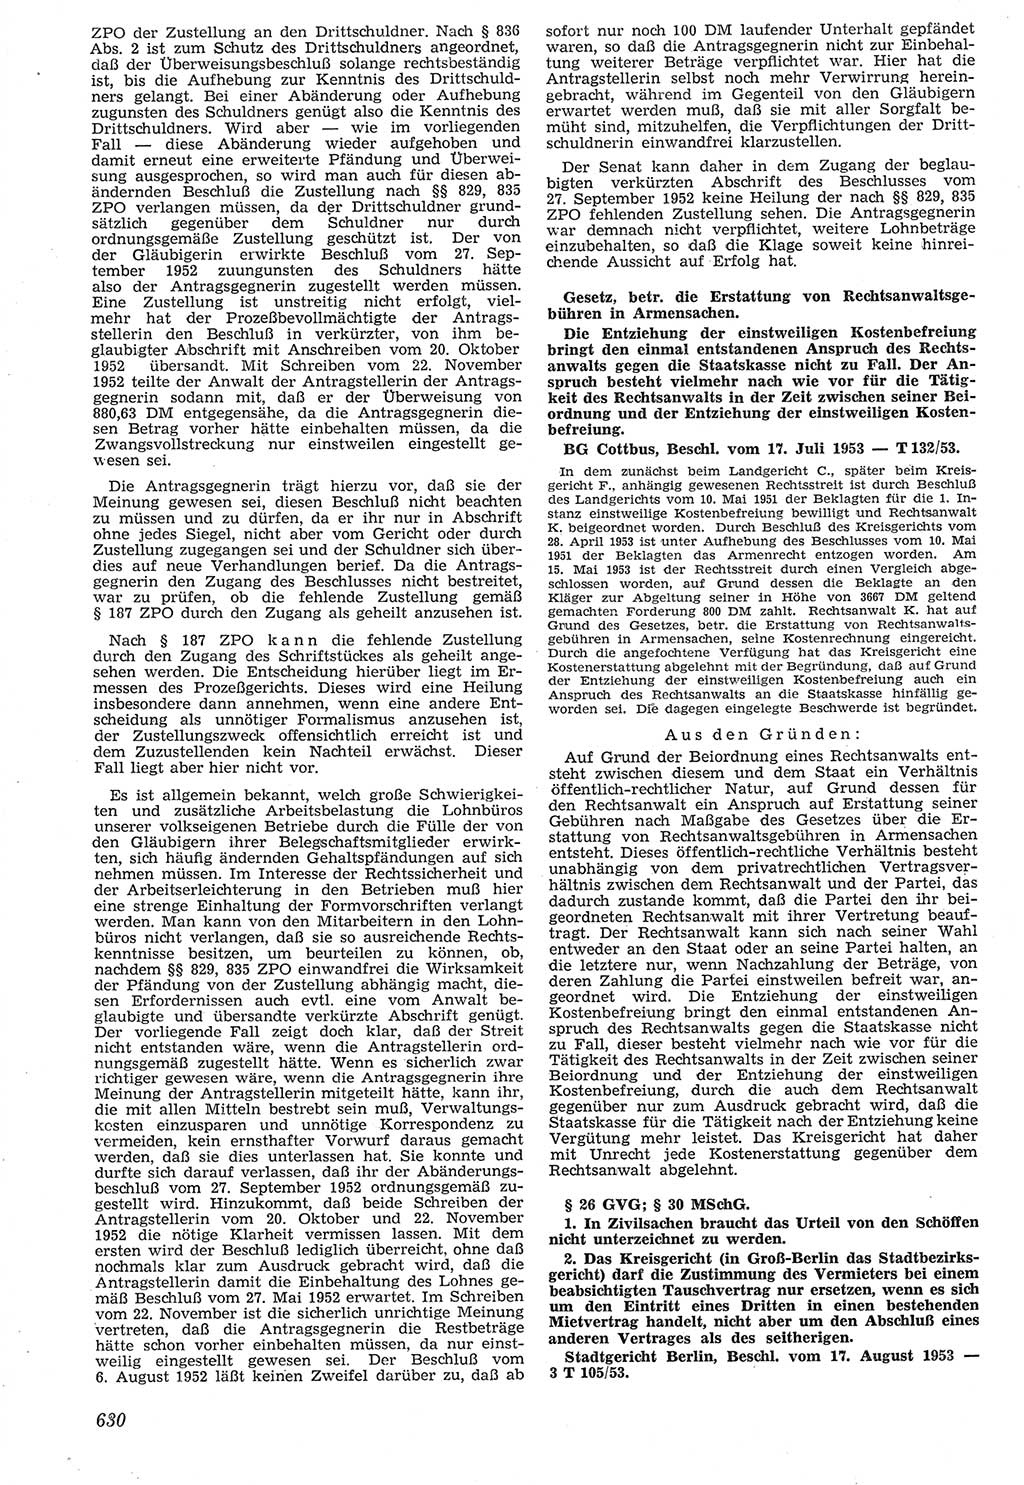 Neue Justiz (NJ), Zeitschrift für Recht und Rechtswissenschaft [Deutsche Demokratische Republik (DDR)], 7. Jahrgang 1953, Seite 630 (NJ DDR 1953, S. 630)